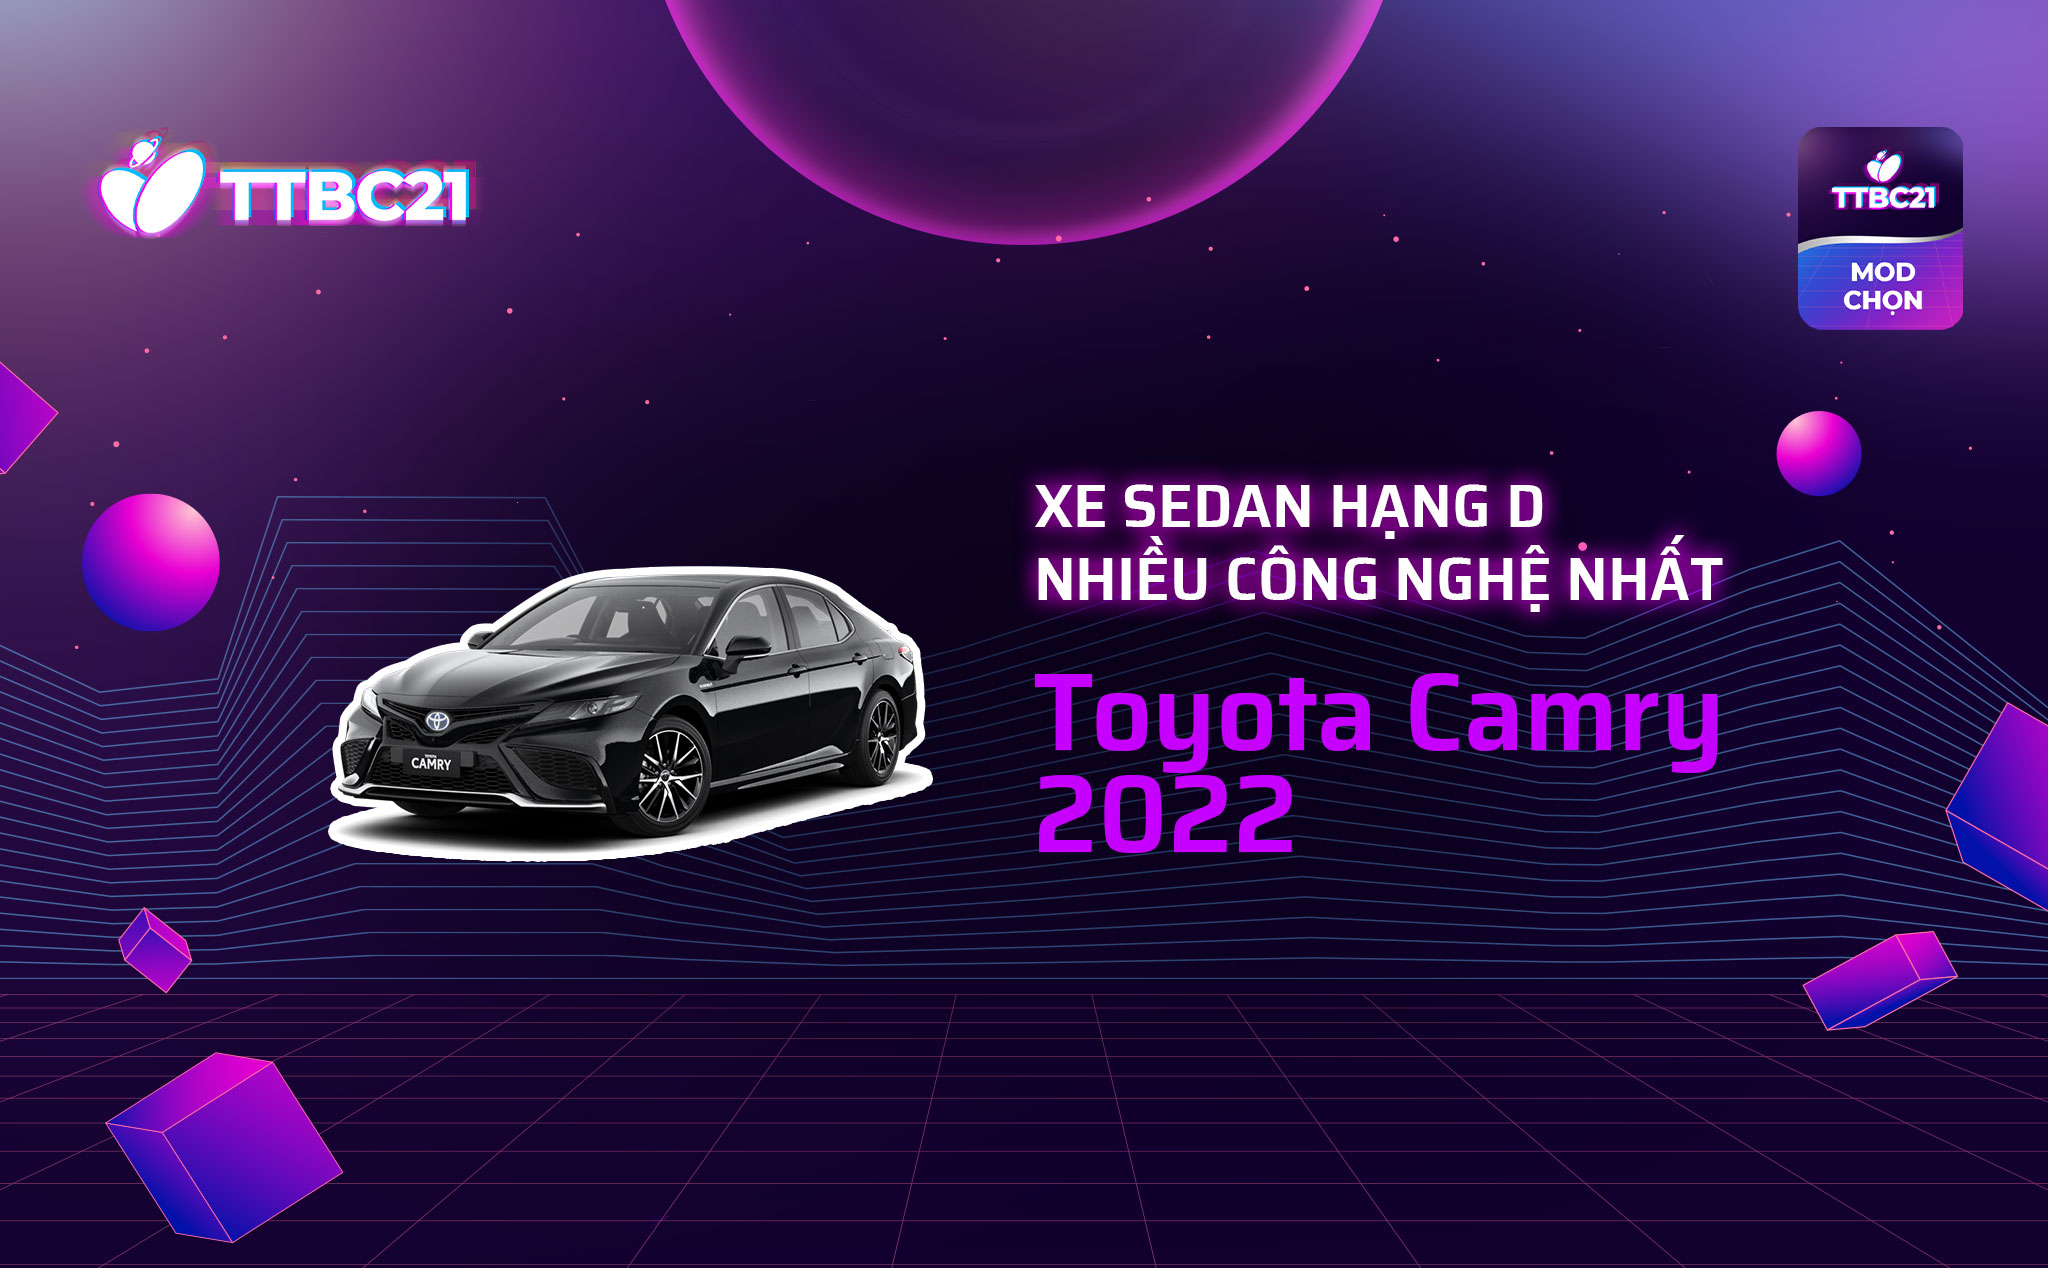 TTBC21 - Mod Choice - Xe sedan hạng D nhiều công nghệ nhất - Toyota Camry 2022